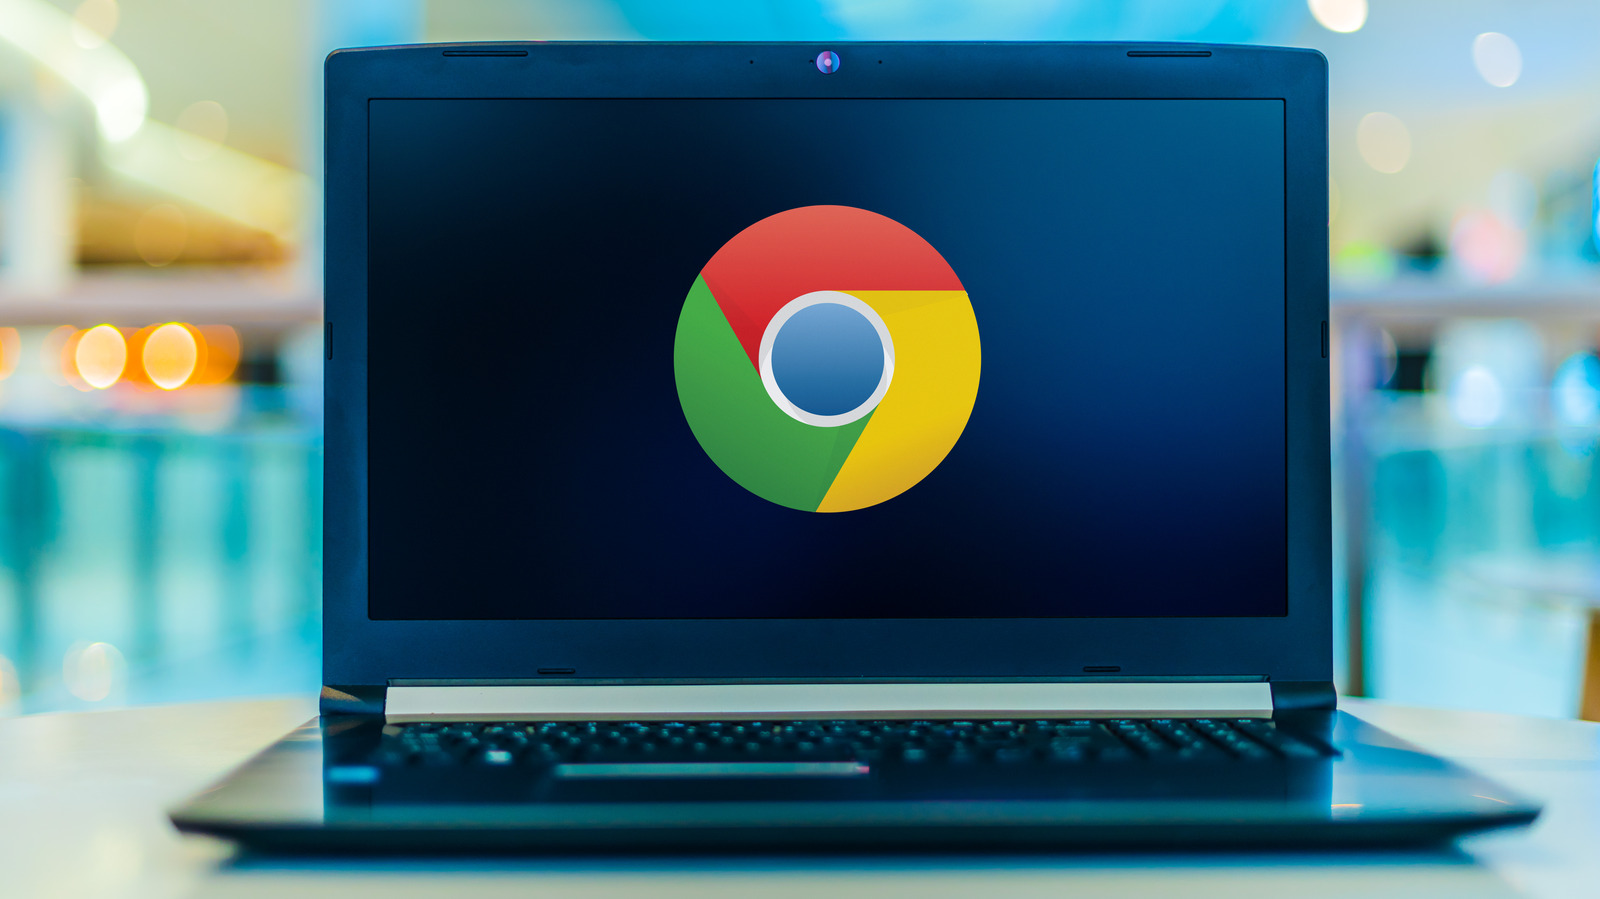 آیا ویژگی پانل جانبی Google Chrome را از دست می دهید؟  در اینجا نحوه استفاده از آن آورده شده است